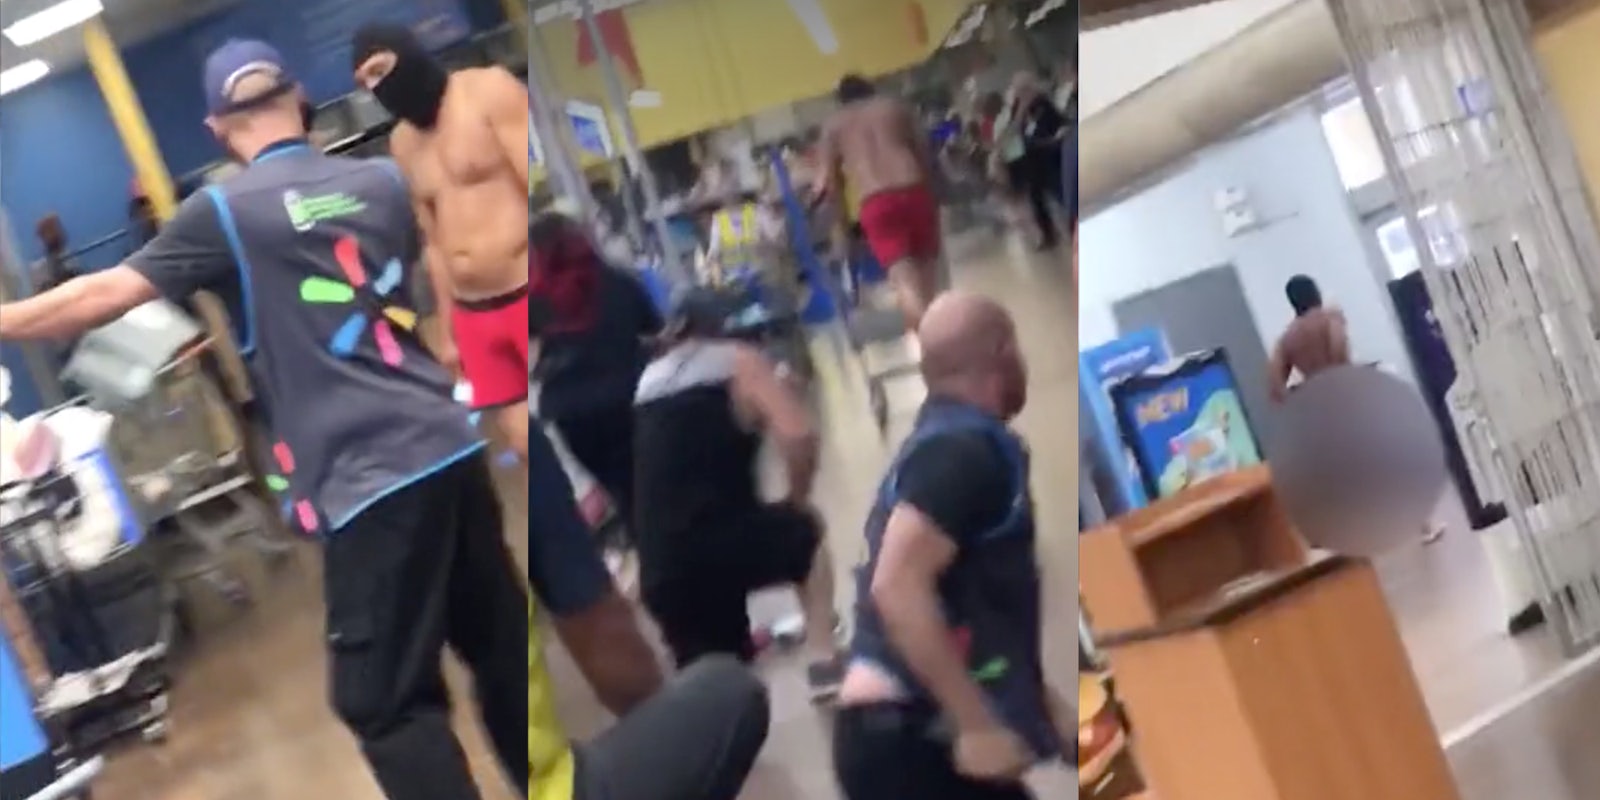 Walmart man puches elderly employee